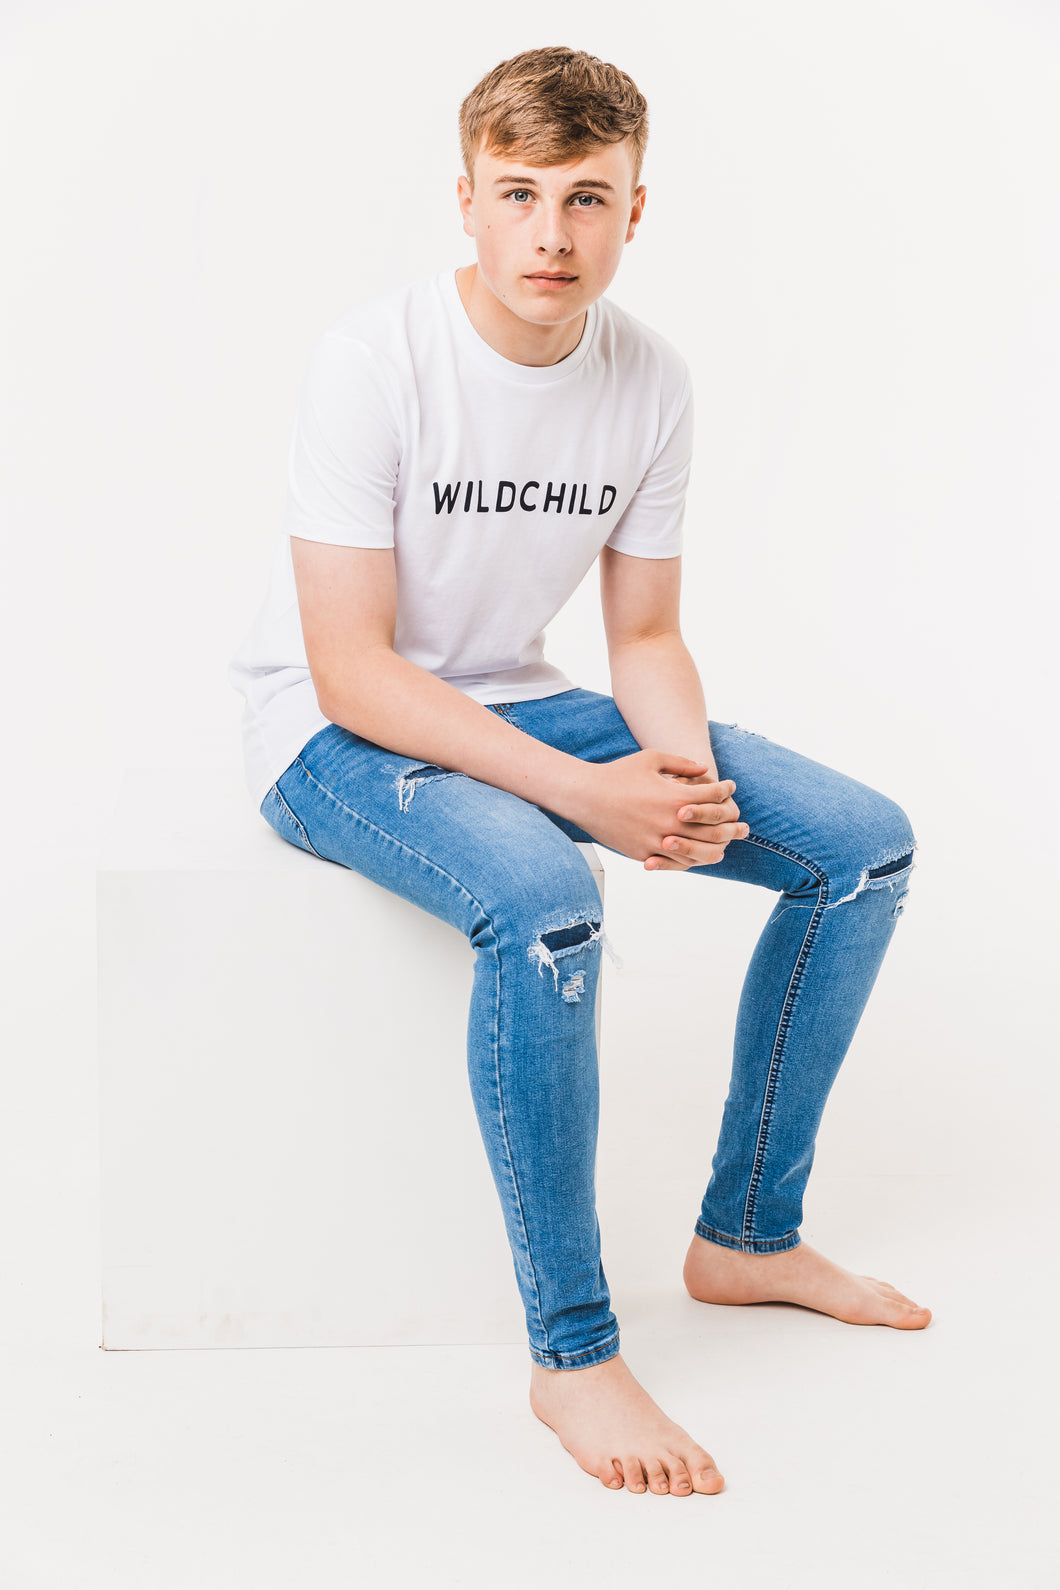 Wildchild T-shirt